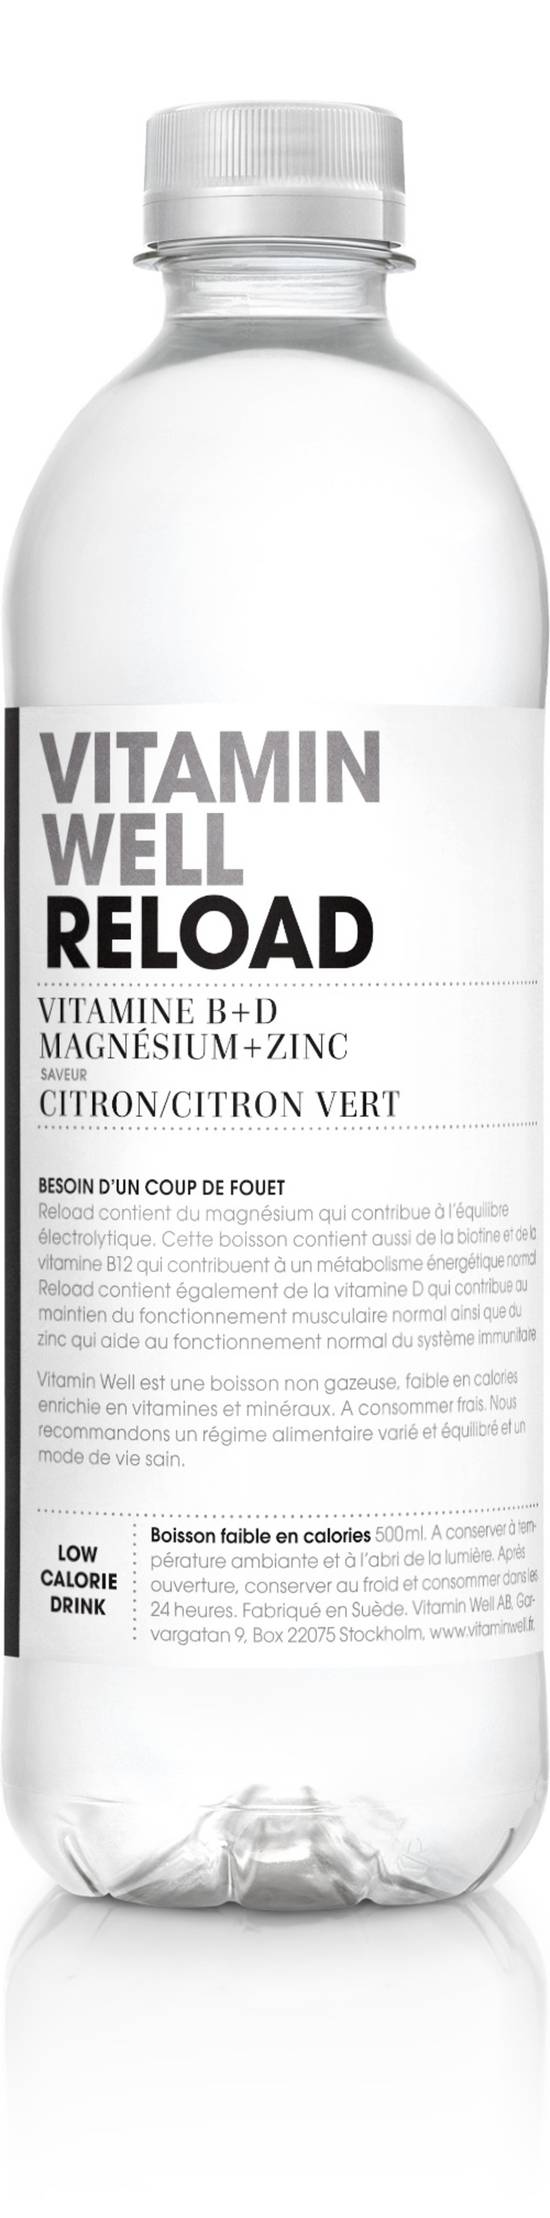 Vitamin Well - Reload boisson gazéifiée aromatisée goût citron (500 ml)